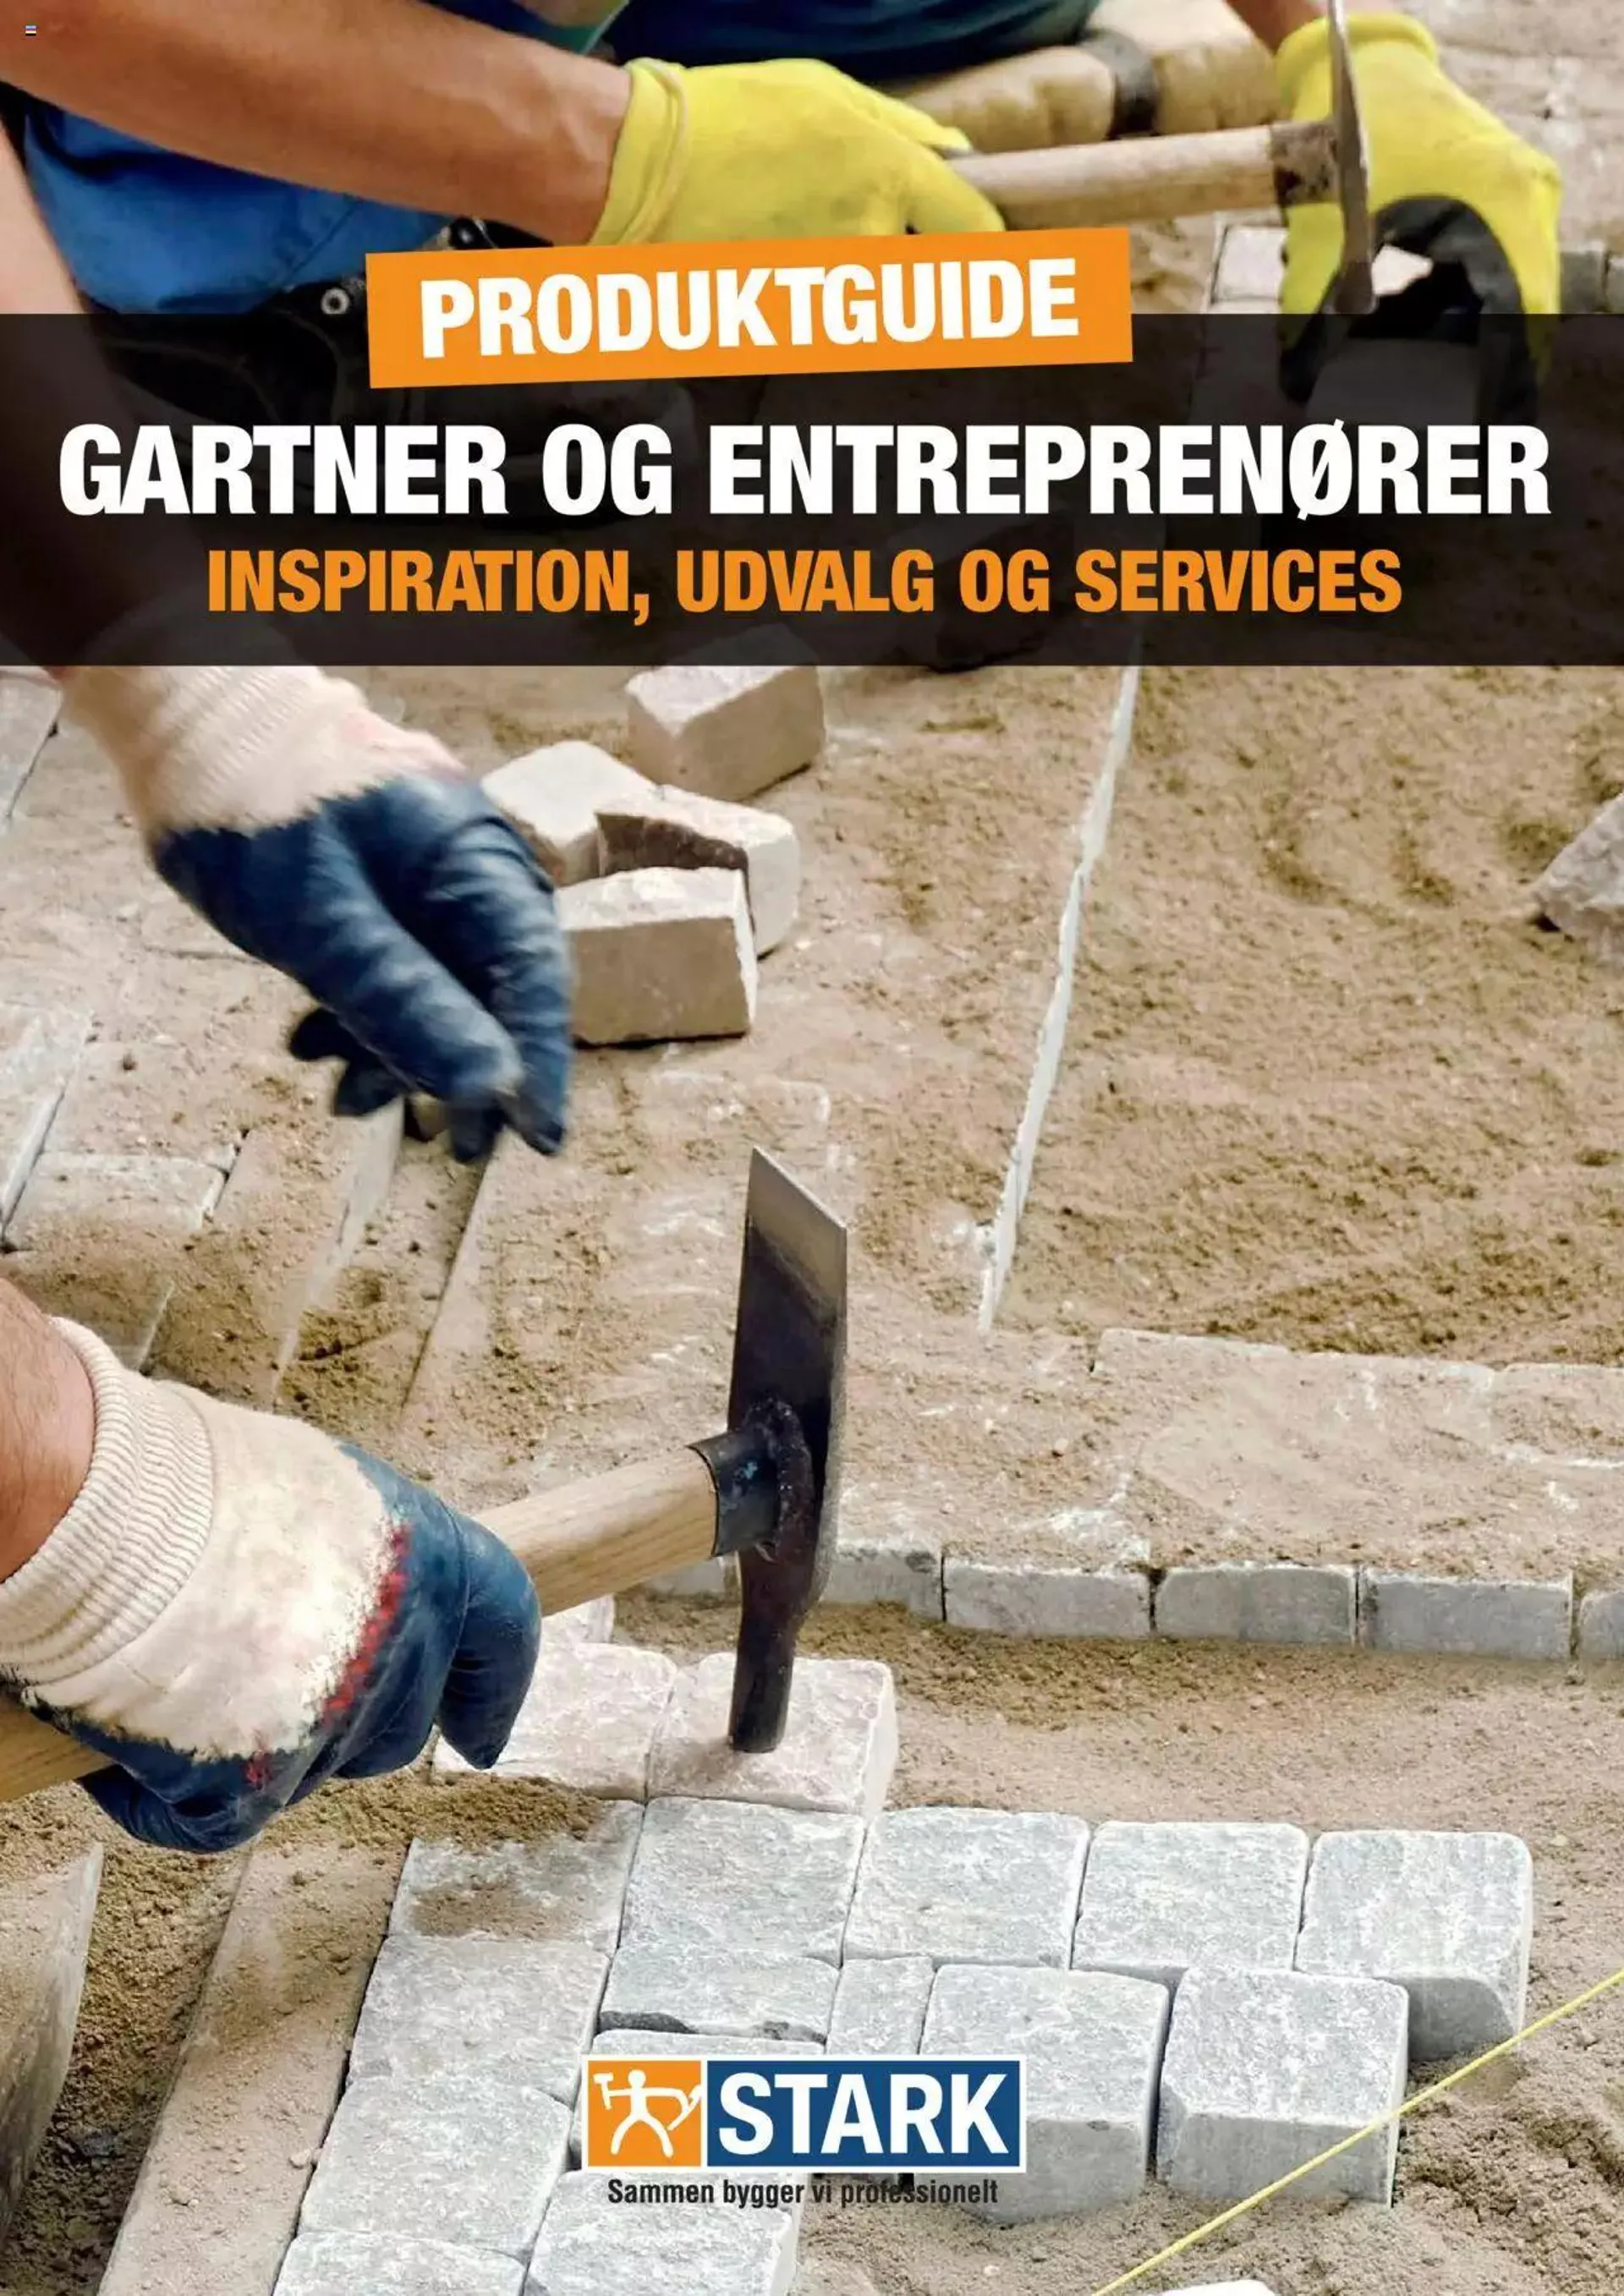 Stark - Gartner og Entreprenør - 0